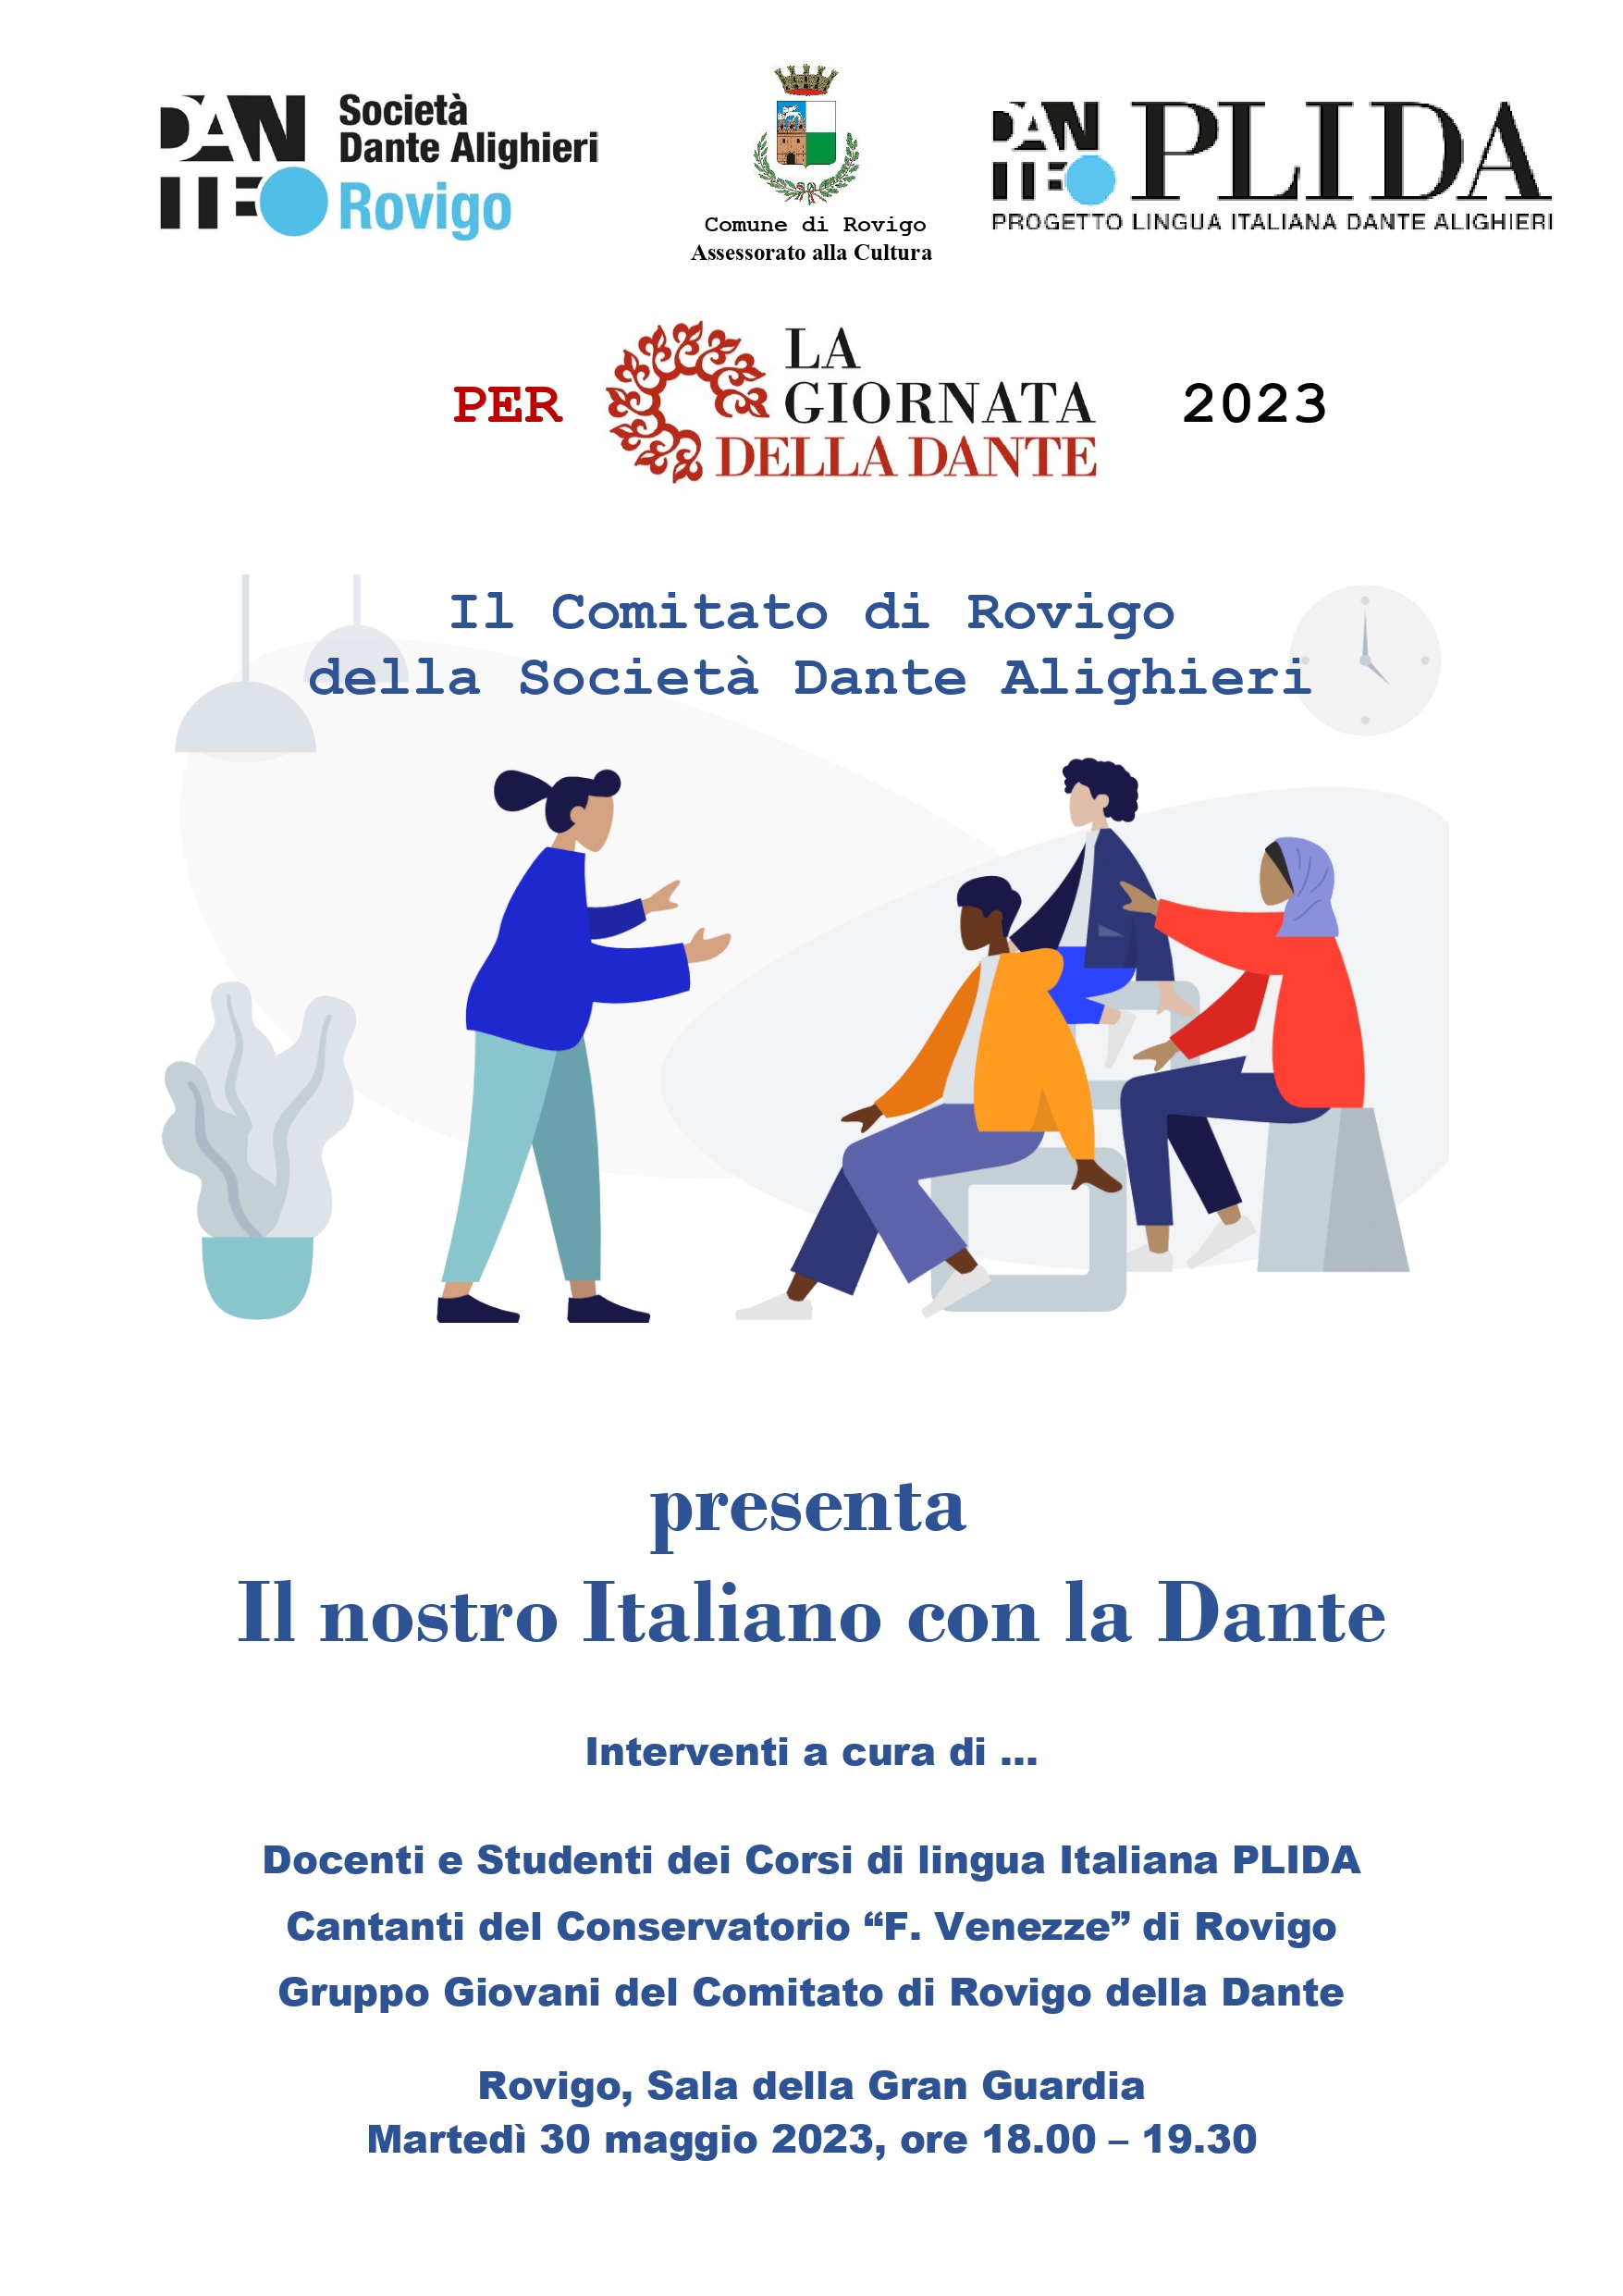 Giornata della Dante 2023 – Comitato di Rovigo